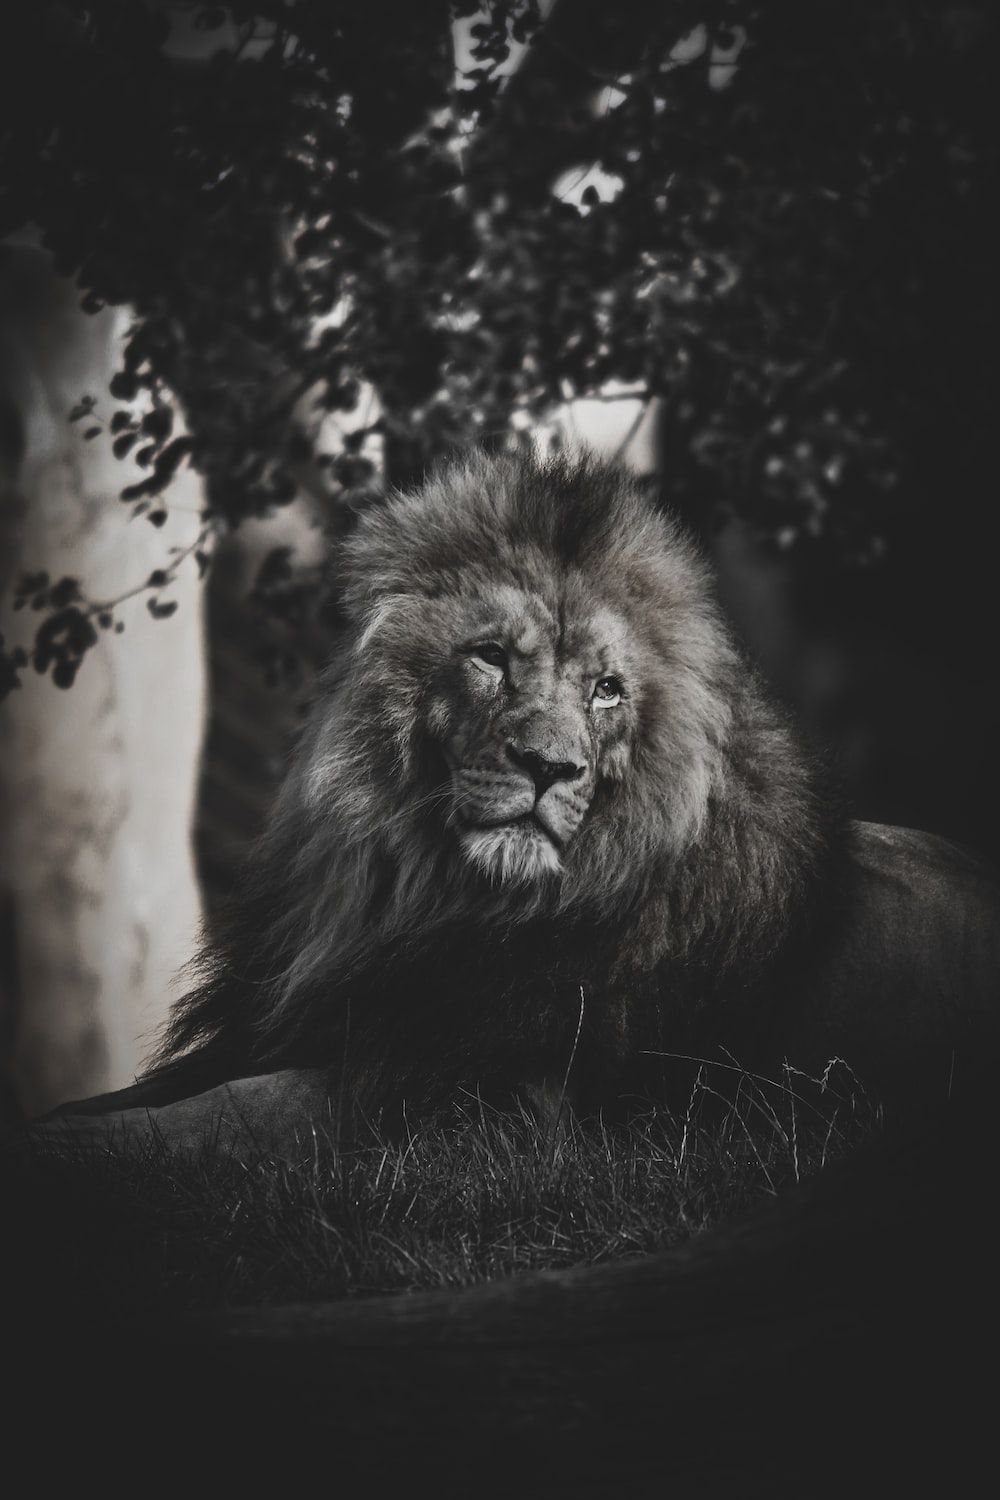  Löwen Hintergrundbild 1000x1500. Foto Zum Thema Ein Schwarz Weiß Foto Eines Löwen